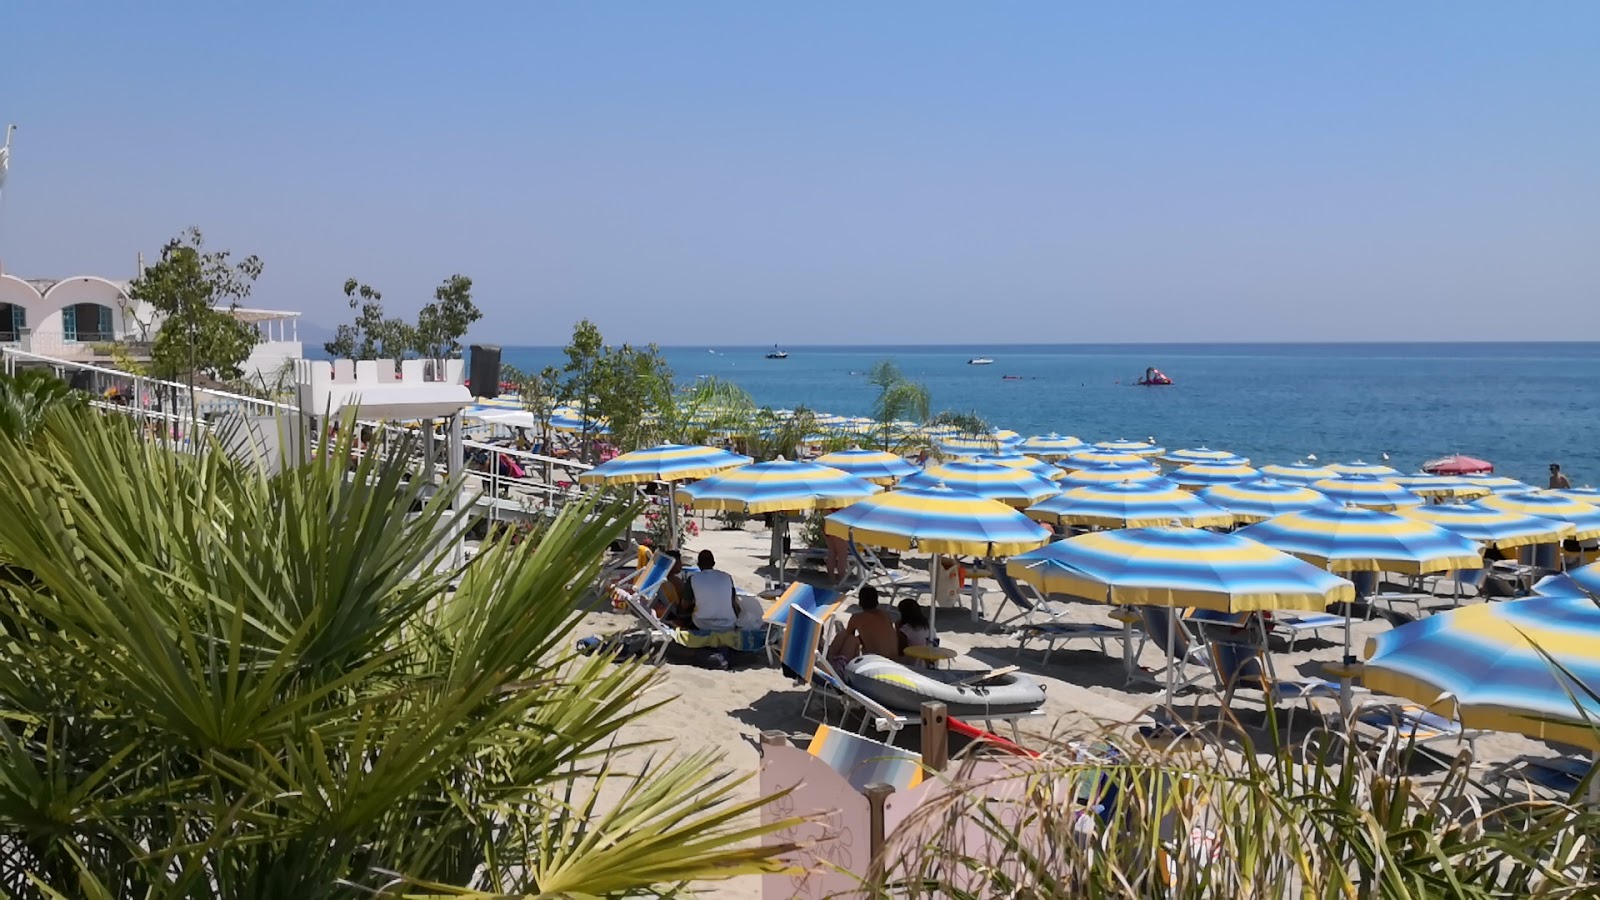 Locri beach'in fotoğrafı plaj tatil beldesi alanı